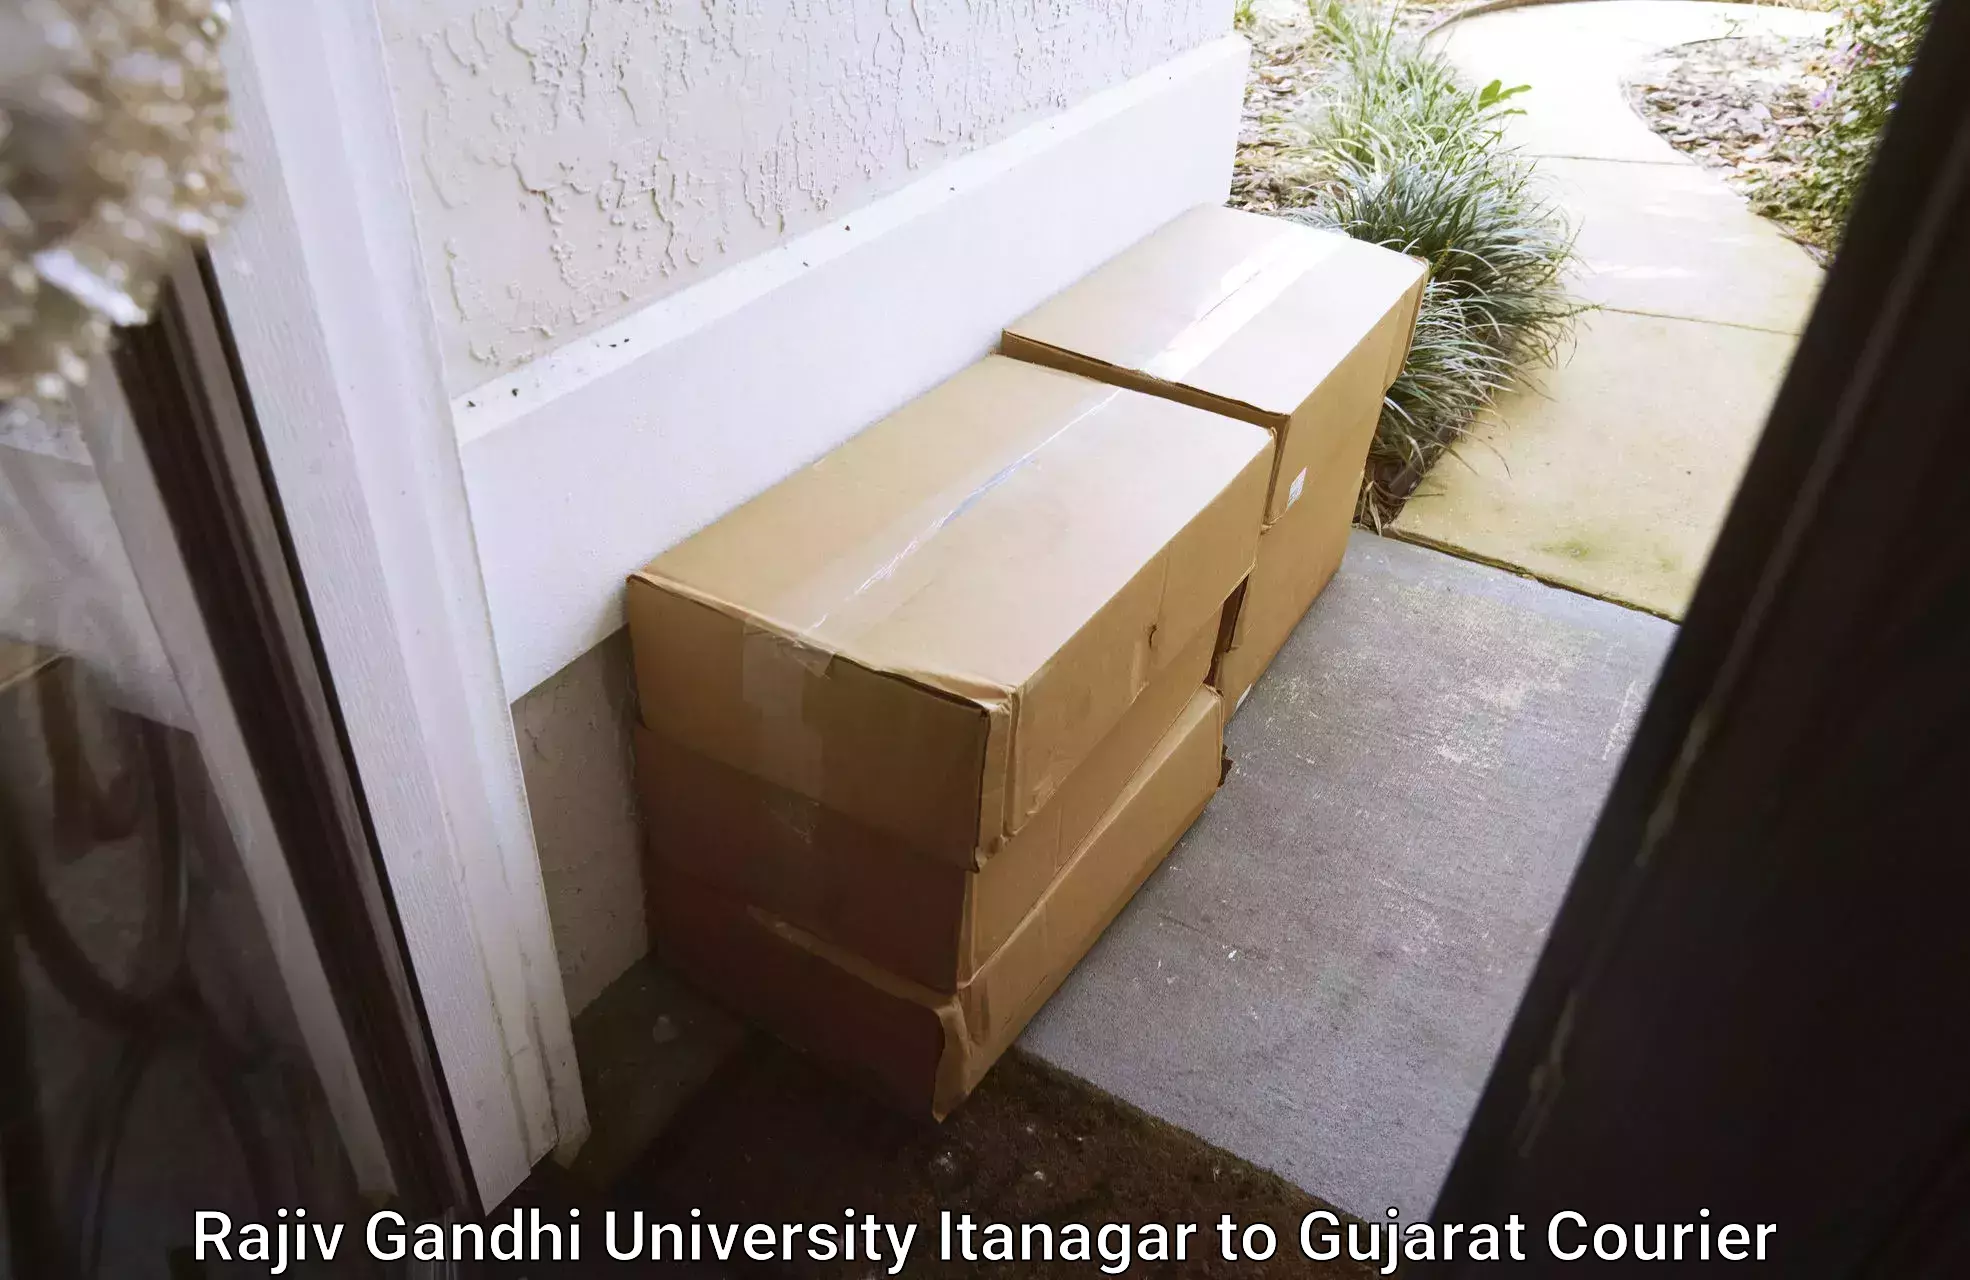 Large package courier Rajiv Gandhi University Itanagar to Gujarat